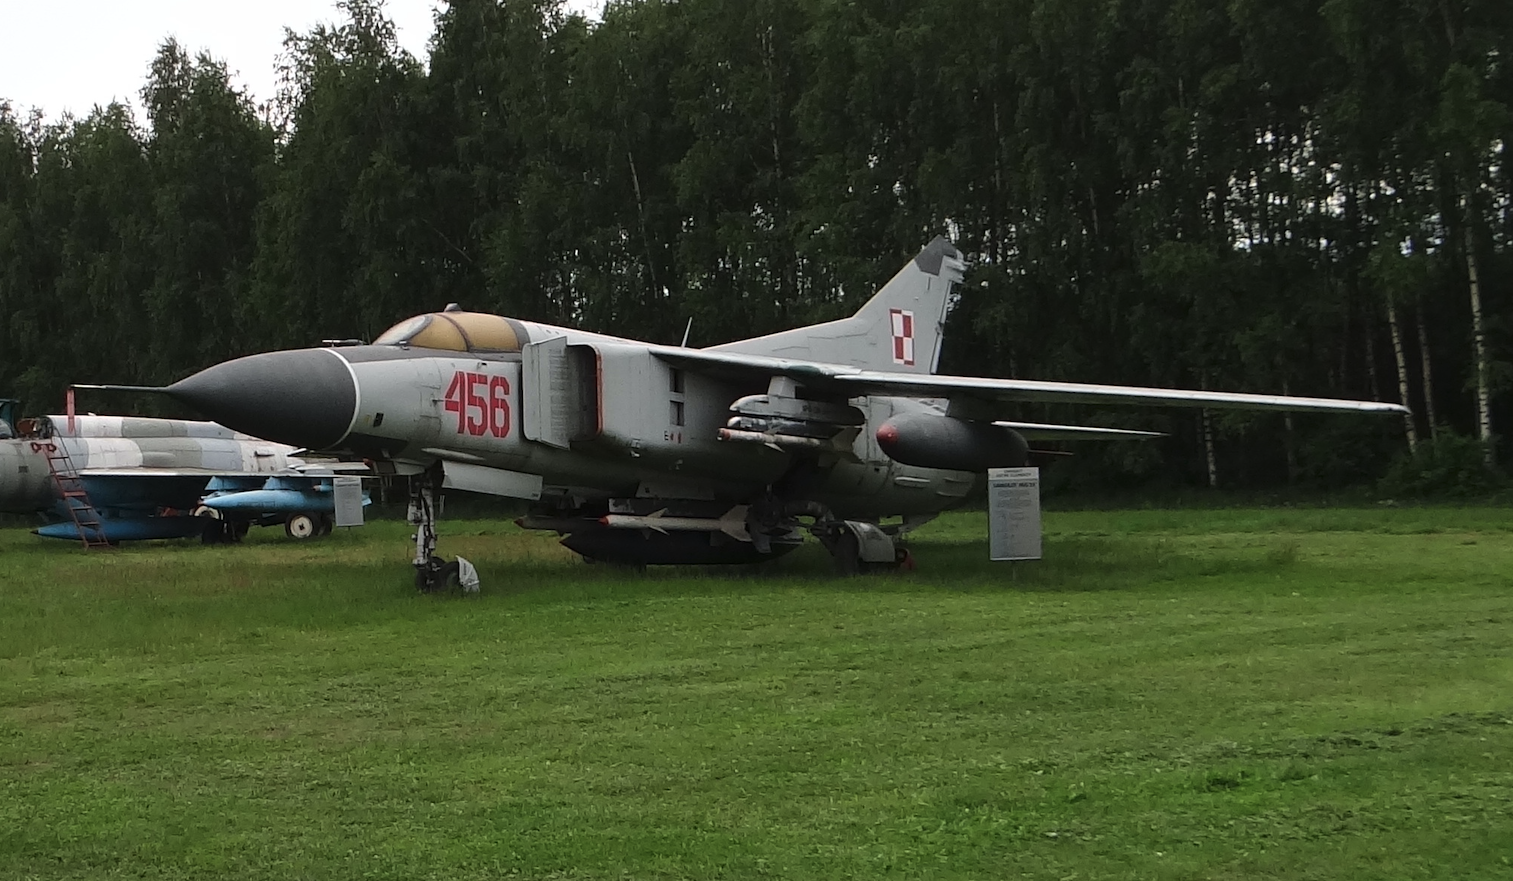 MiG-23 MF nb 456. 2021 year. Photo by Karol Placha Hetman